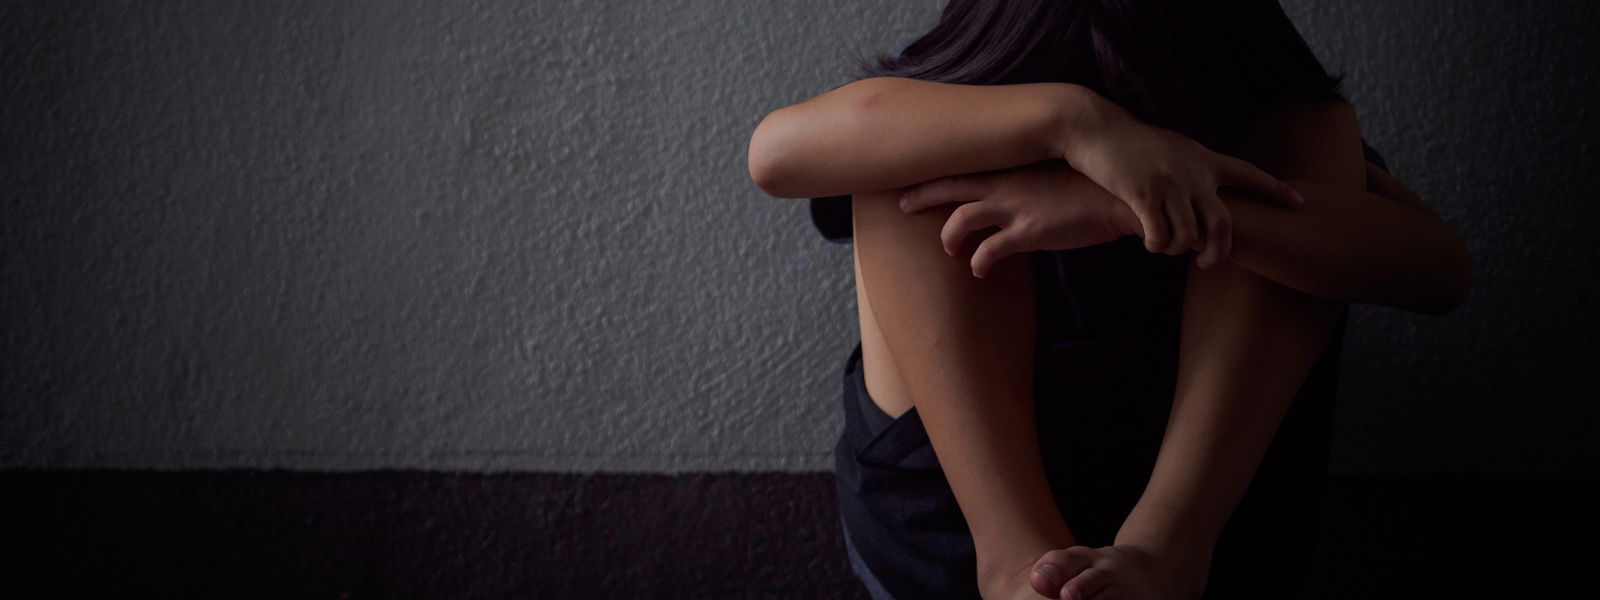 En 2019, la section policière de la «Protection de la jeunesse et infractions à caractère sexuel» a ouvert 882 nouveaux dossiers pour des affaires d'infractions graves contre les mineurs.